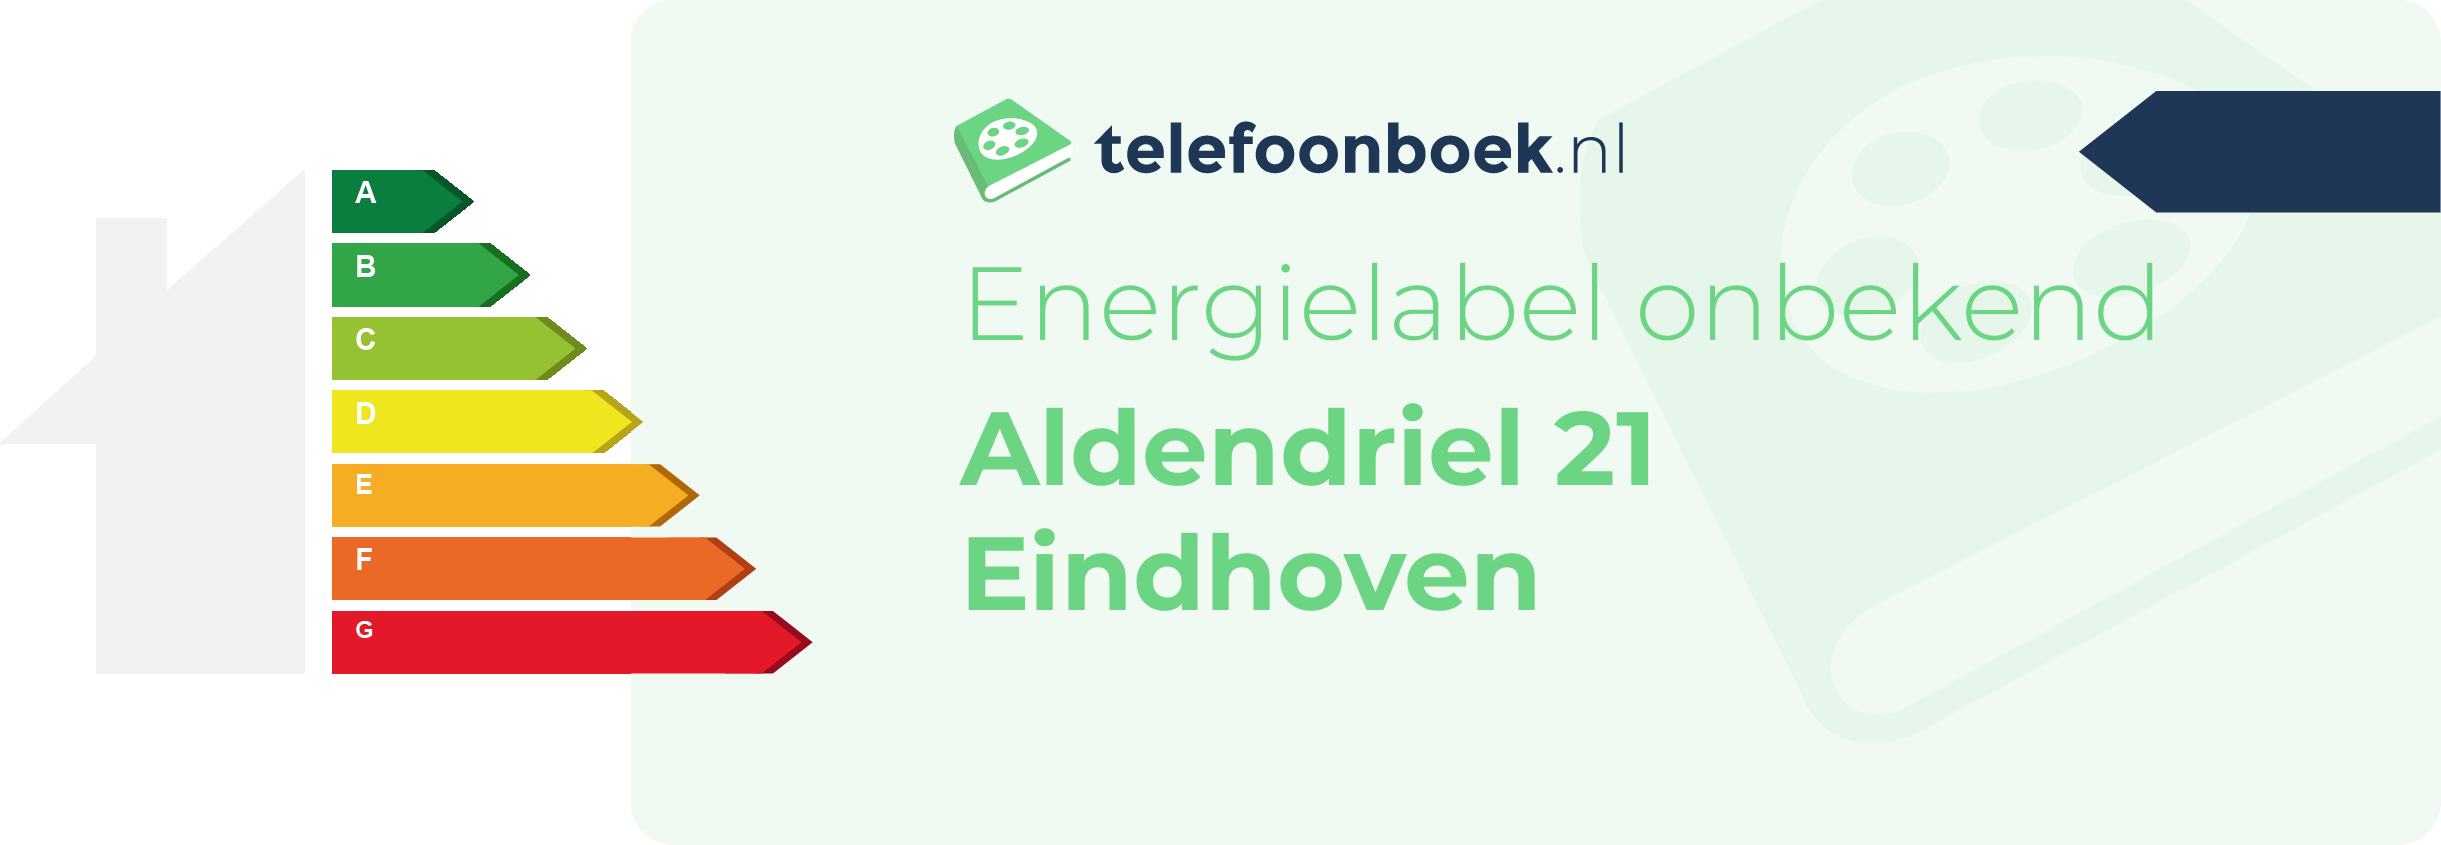 Energielabel Aldendriel 21 Eindhoven